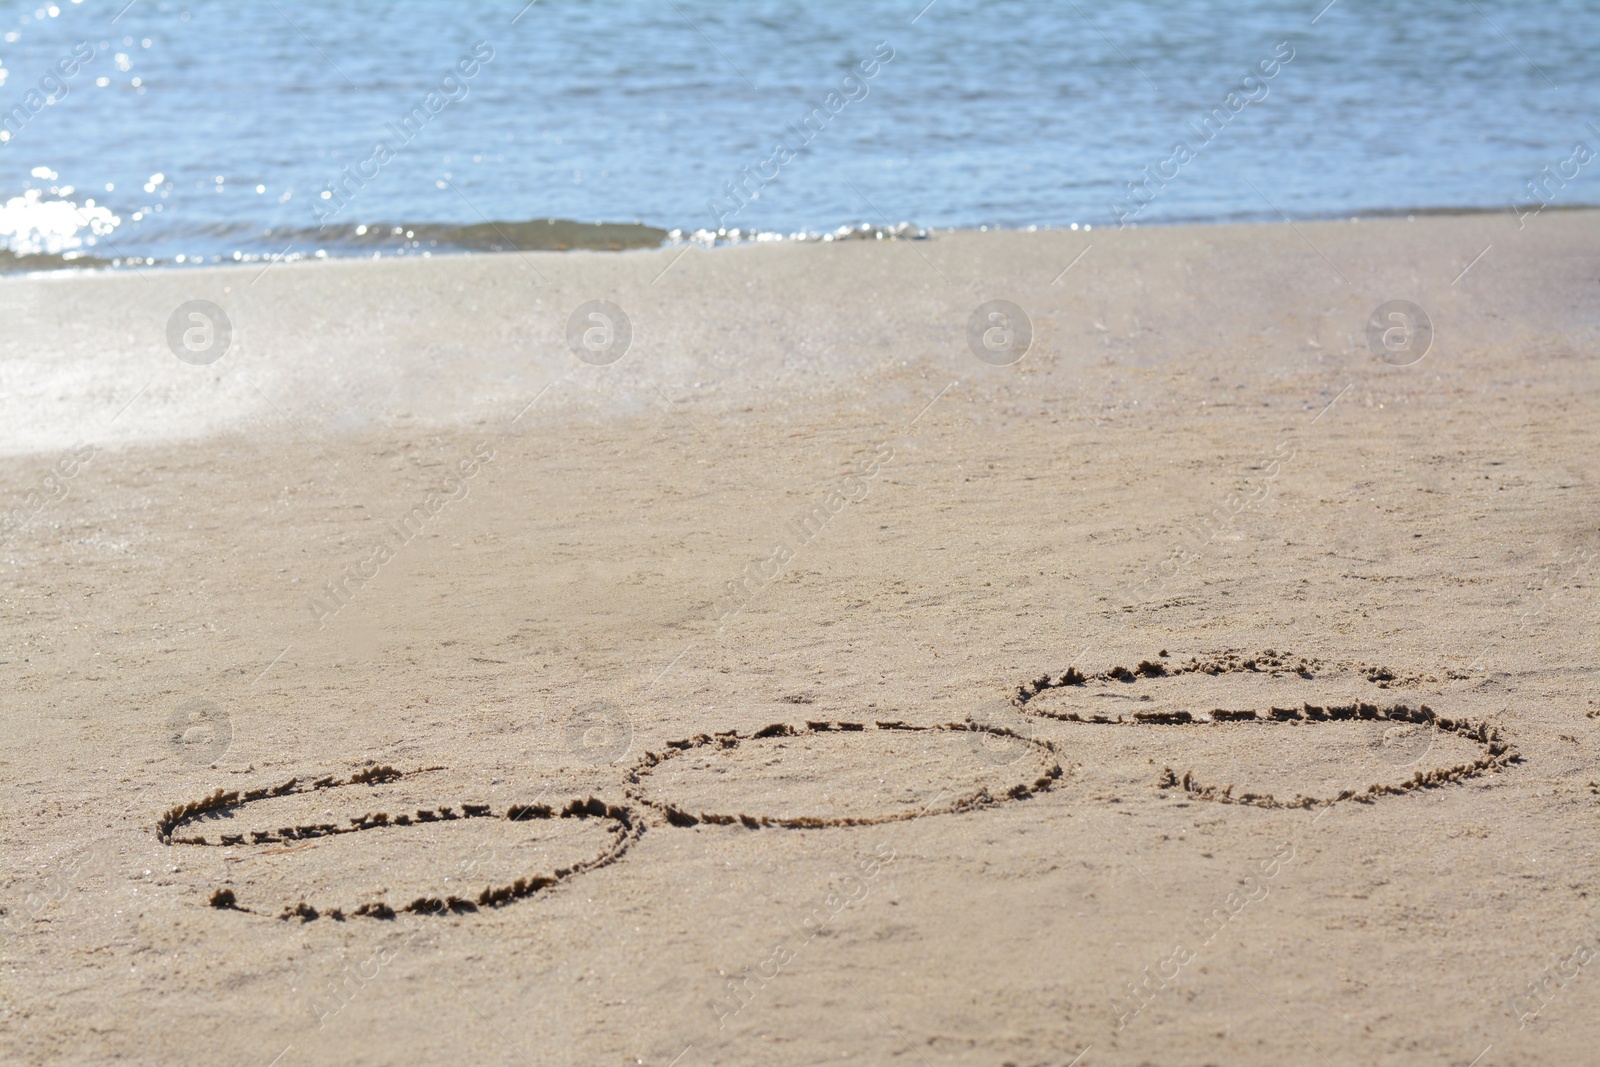 Photo of SOS message written on sand near sea